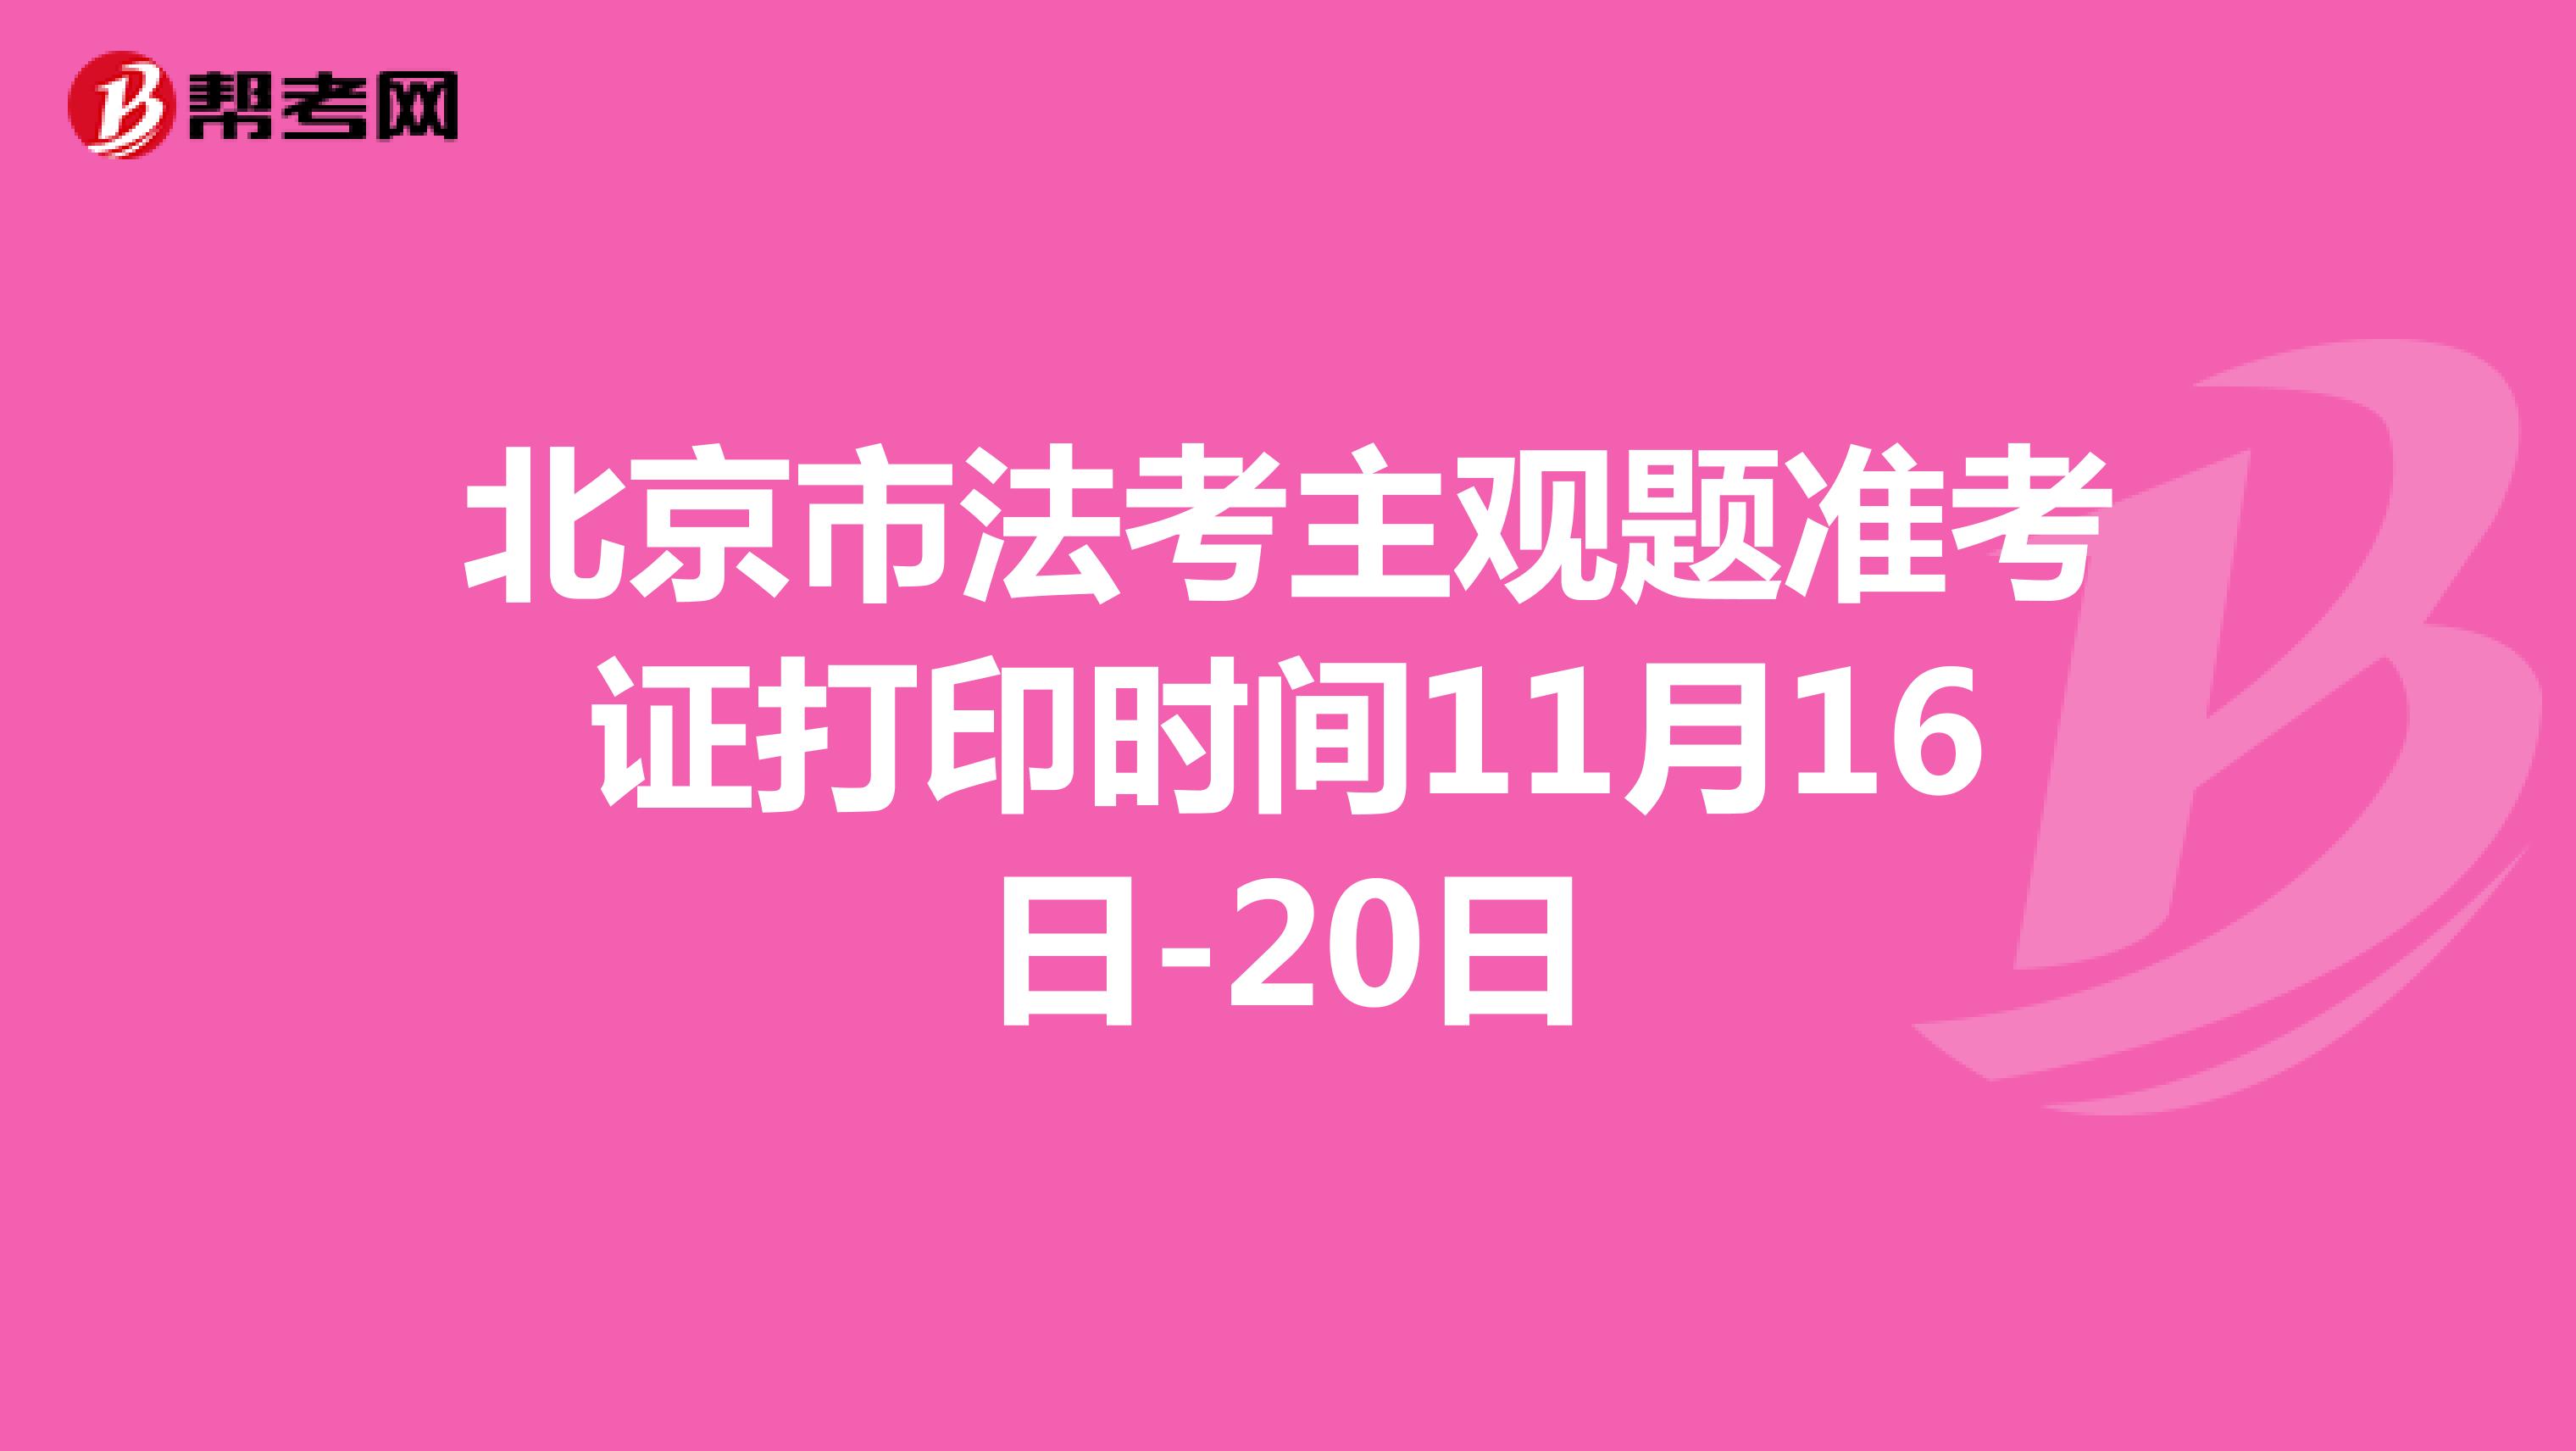 北京市法考主观题准考证打印时间11月16日-20日